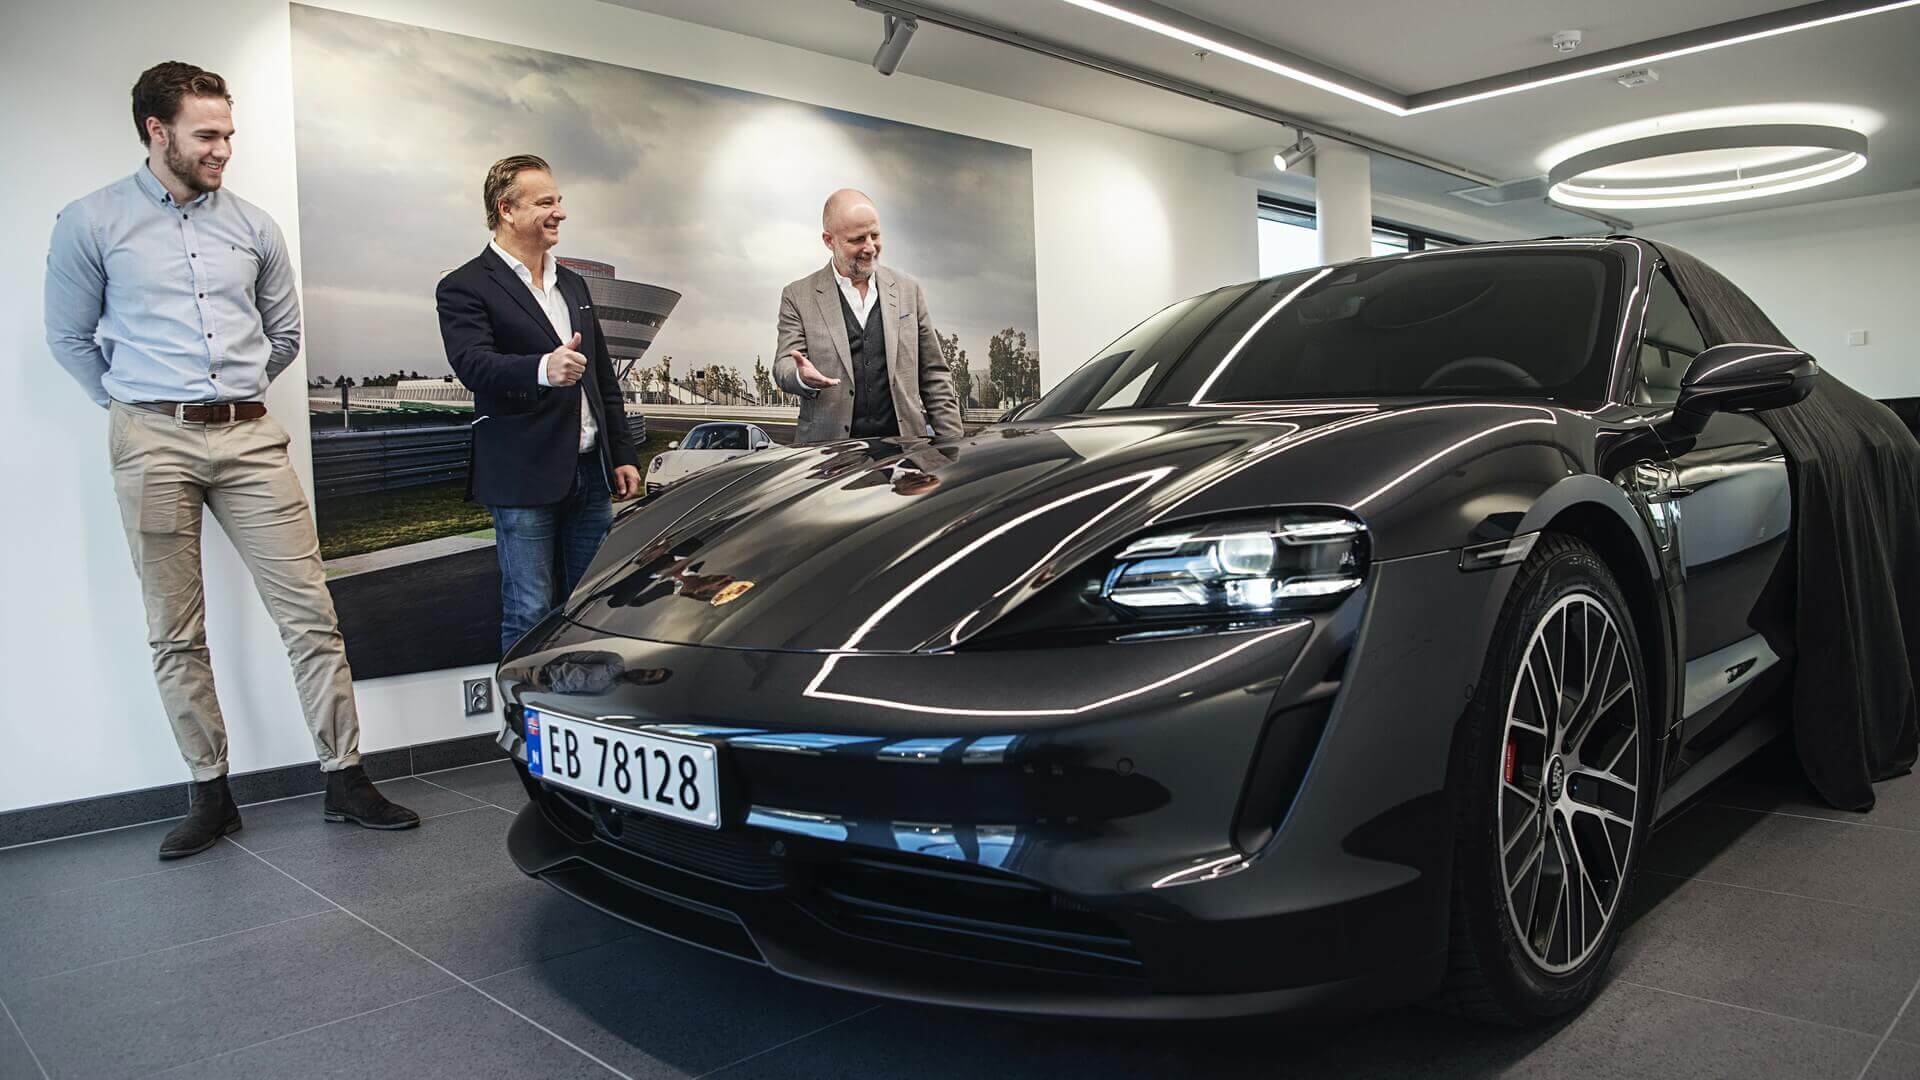 1000-й электромобиль Porsche Taycan получил покупатель в Норвегии 